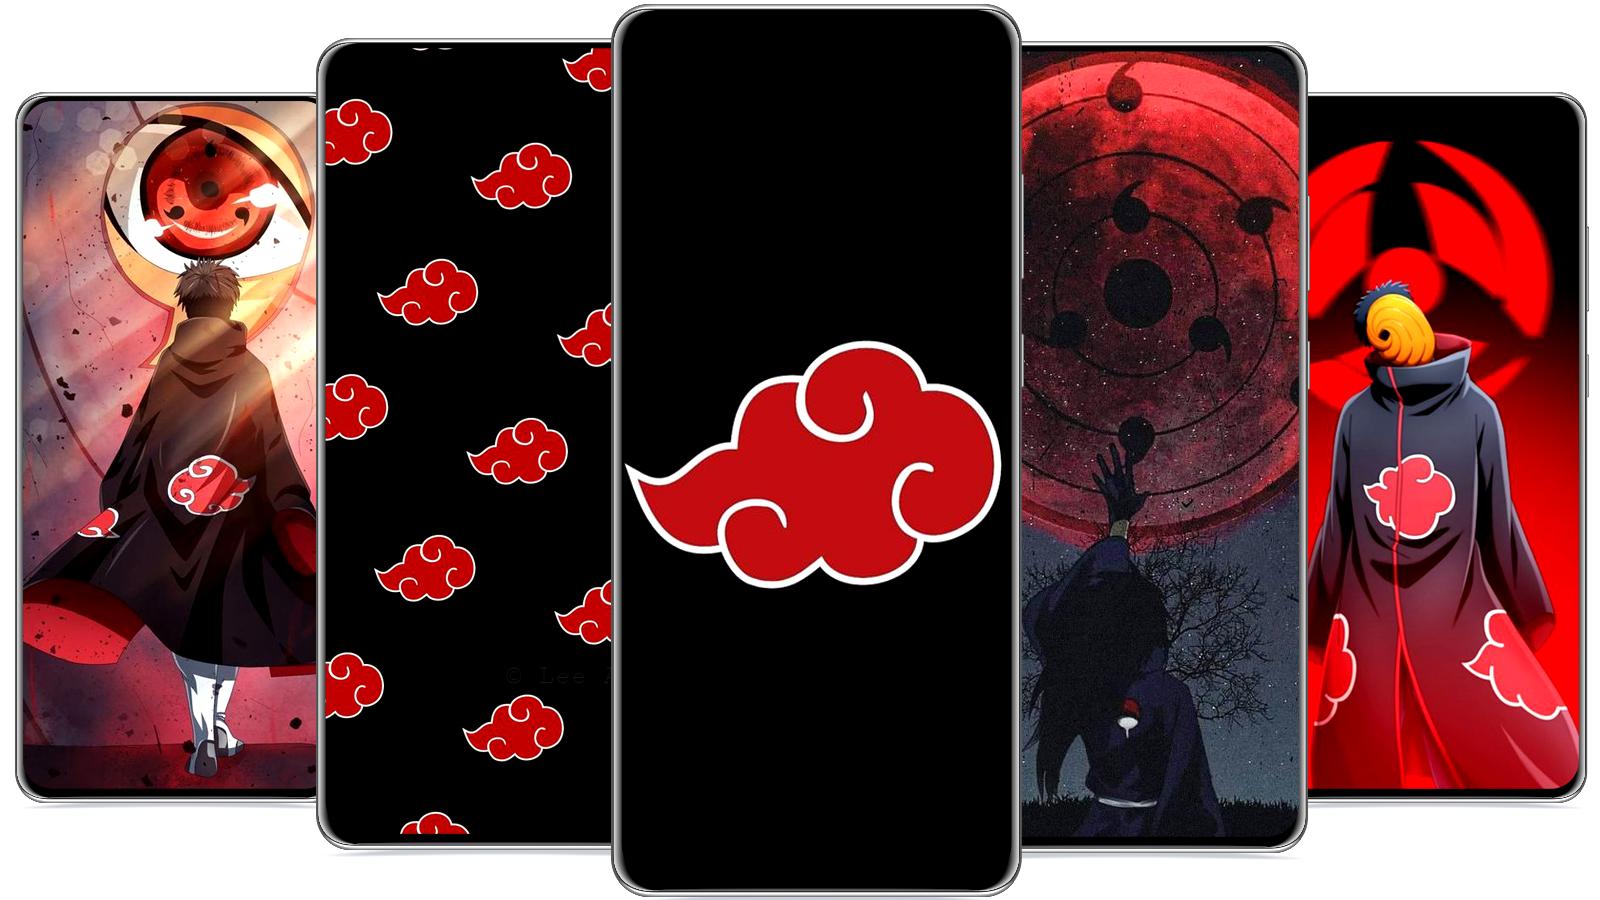 Akatsuki Cloud 4k iPhone Wallpapers - Wallpaper Cave